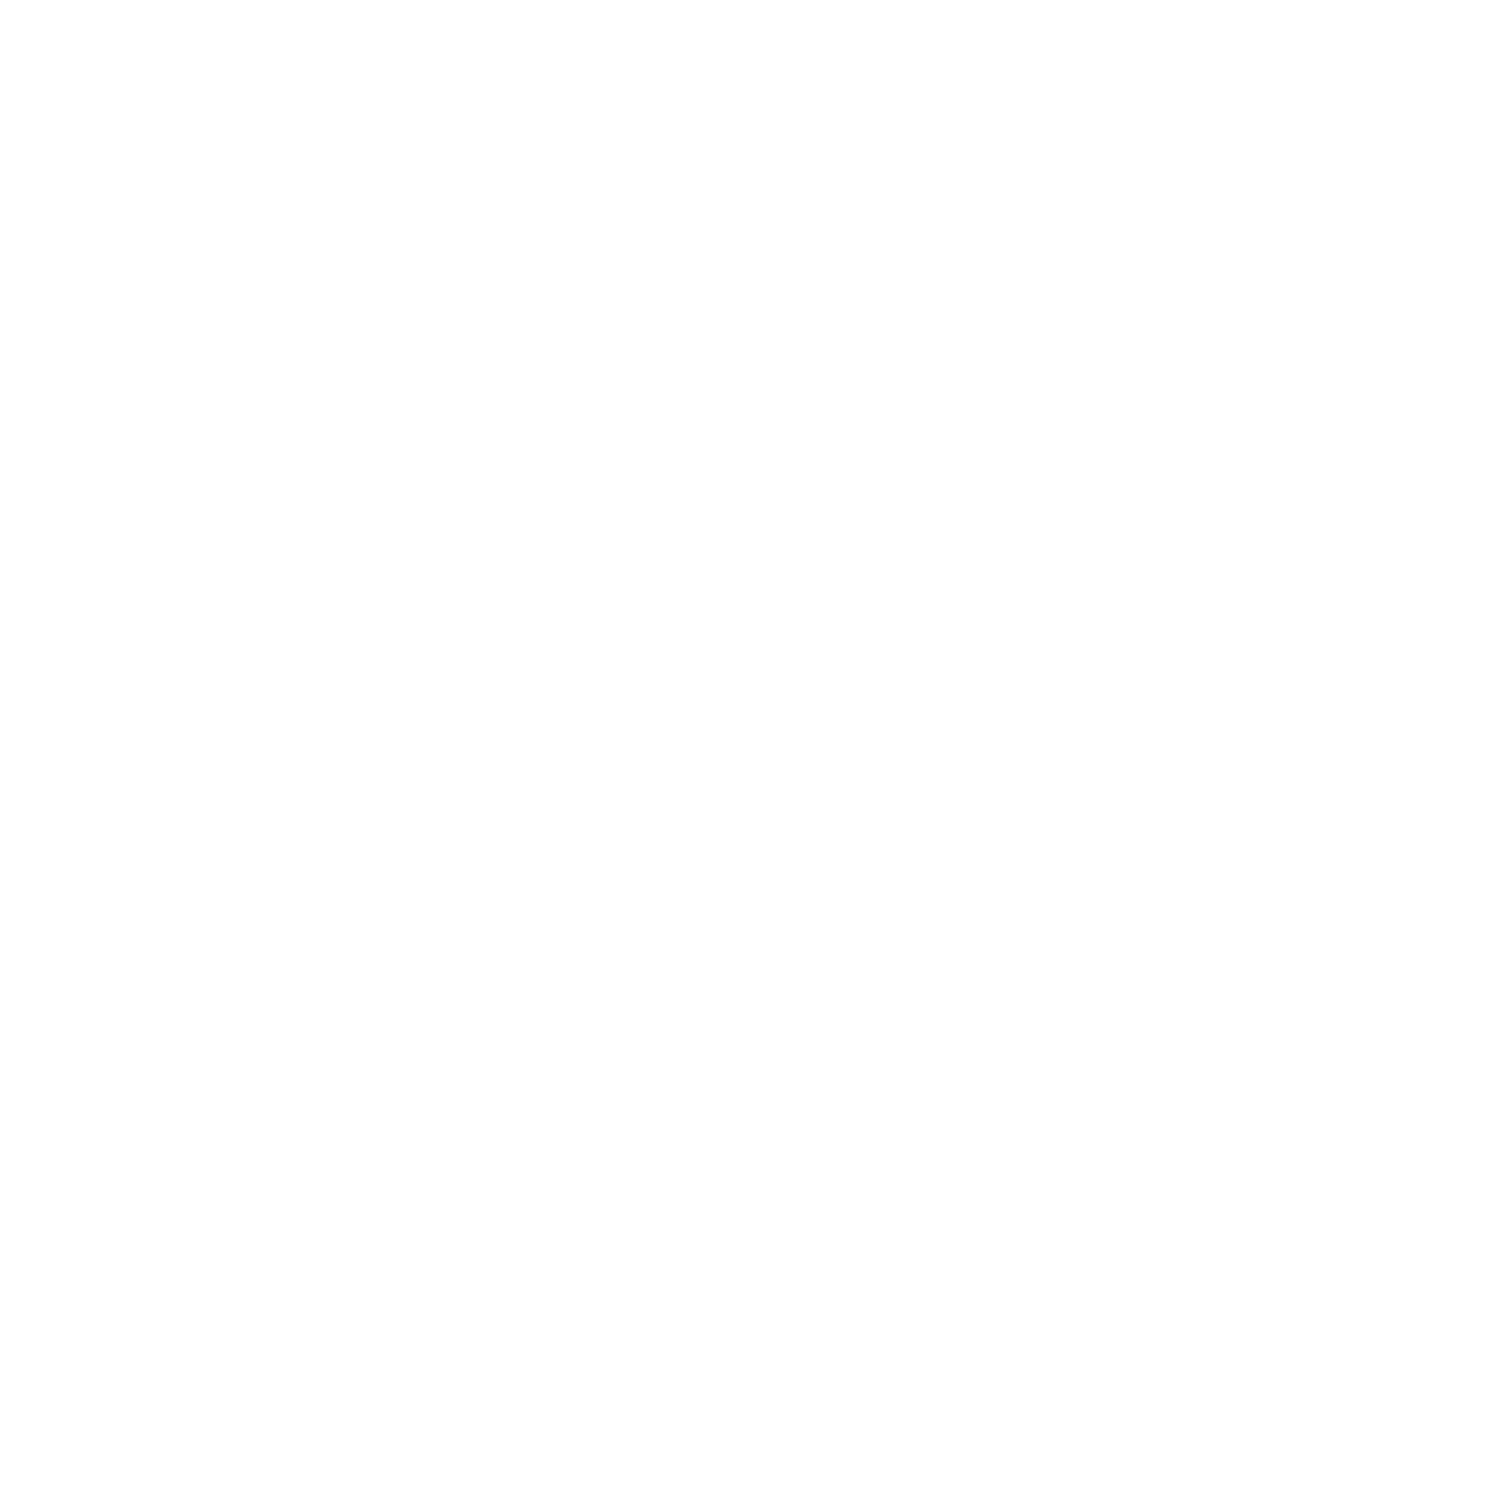 Ismae